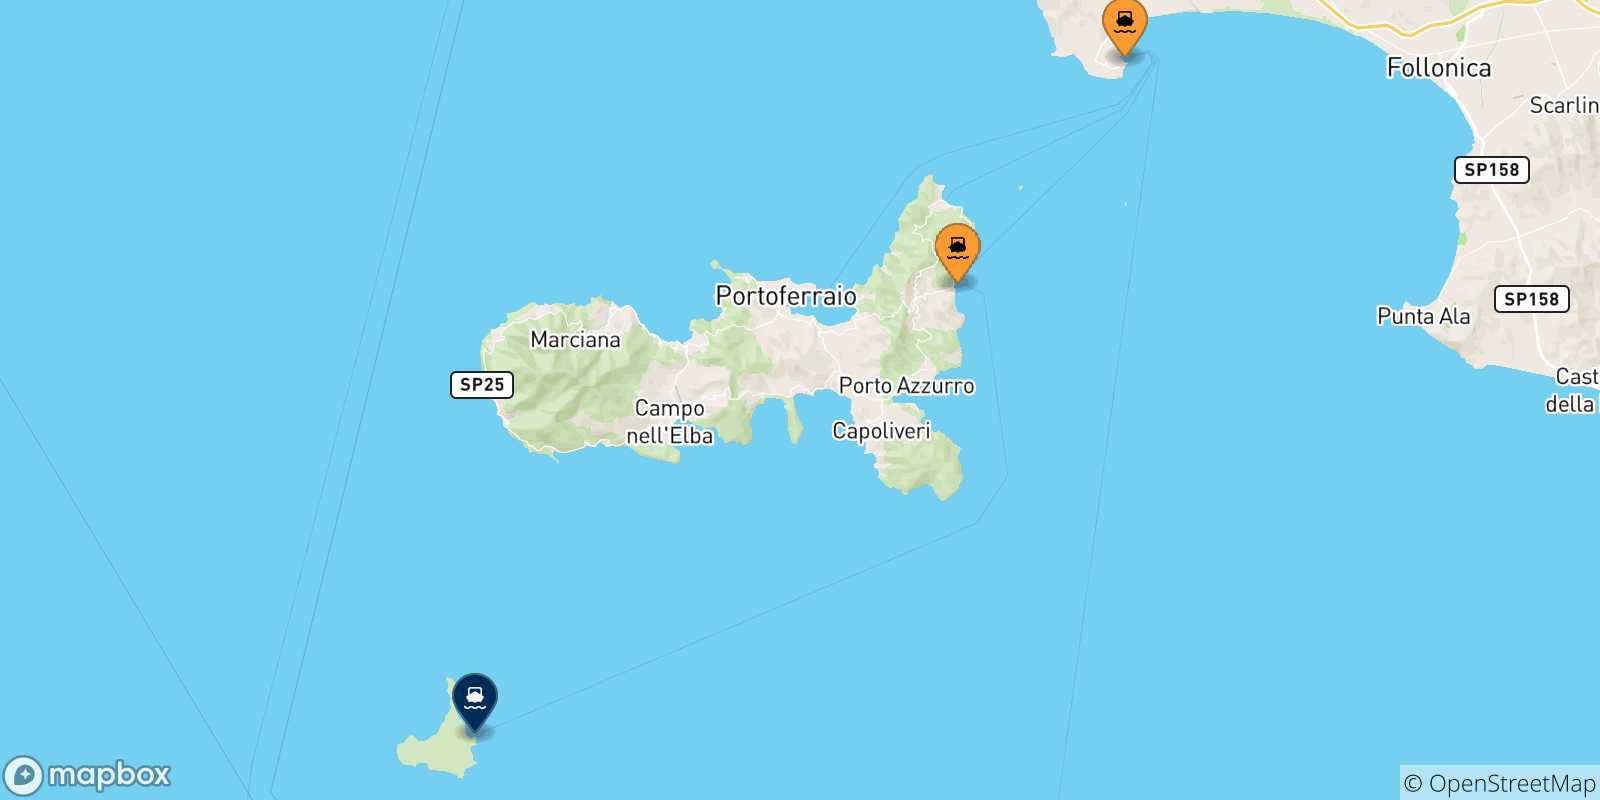 Mappa dei porti collegati con l' Isola Di Pianosa